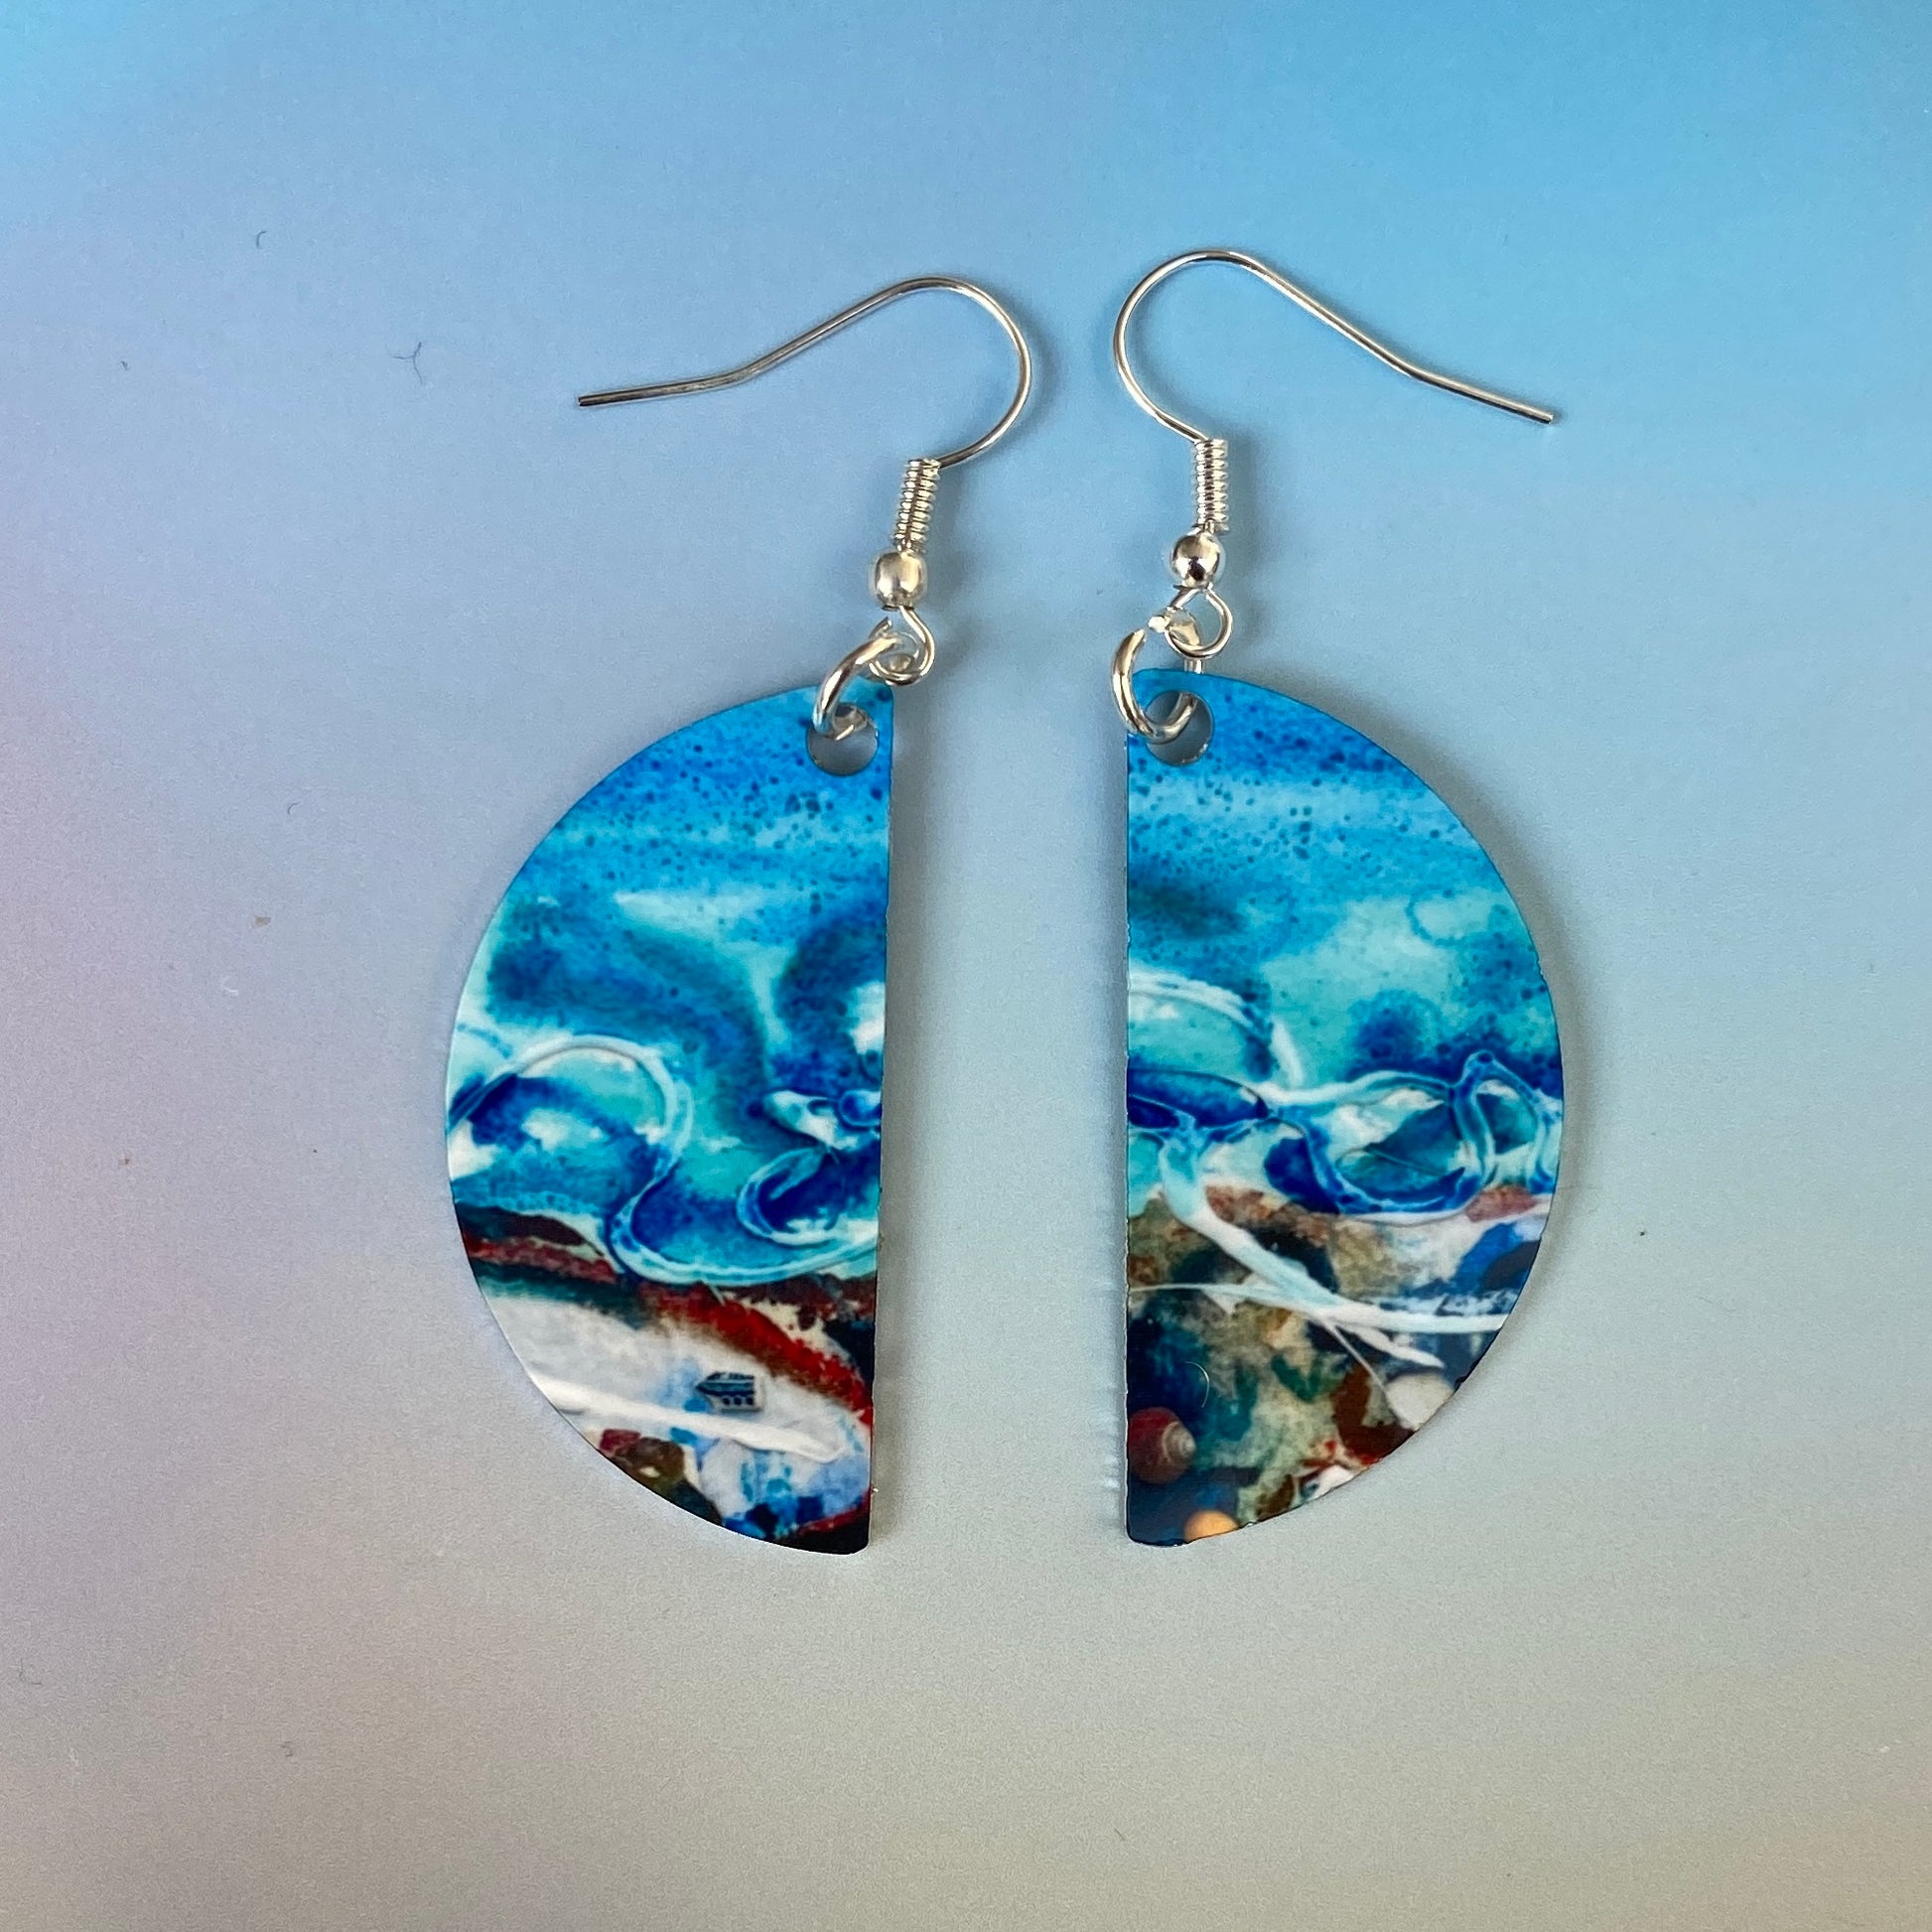 Shorelines earrings designed by Orkney artist Jane Glue Scotland